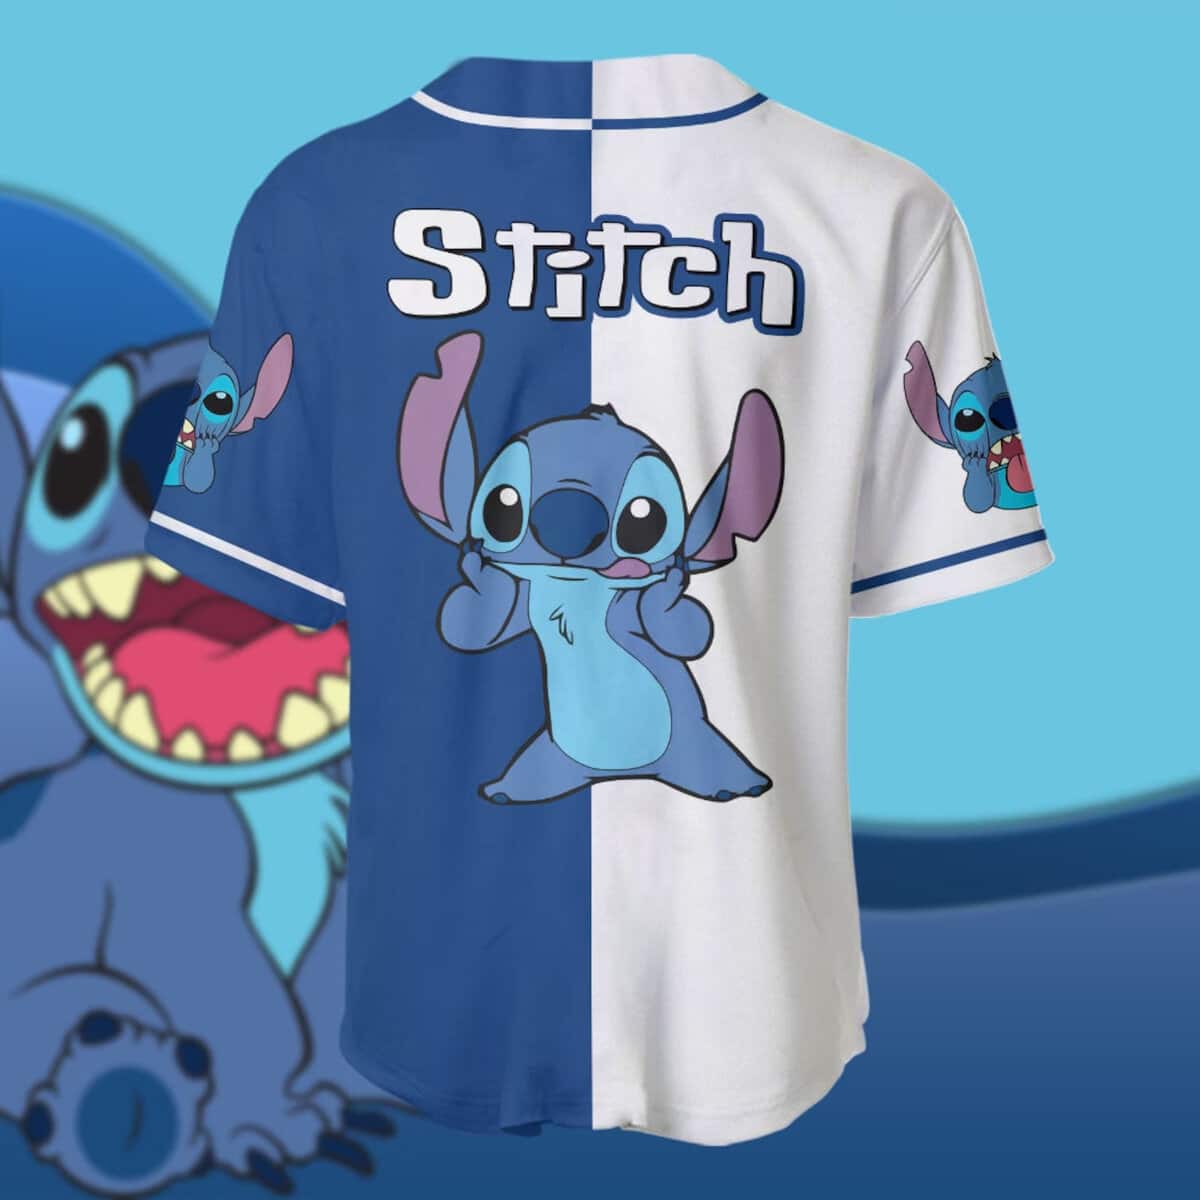 Atlanta braves MLB Stitch Baseball Jersey Shirt Style 9 Custom